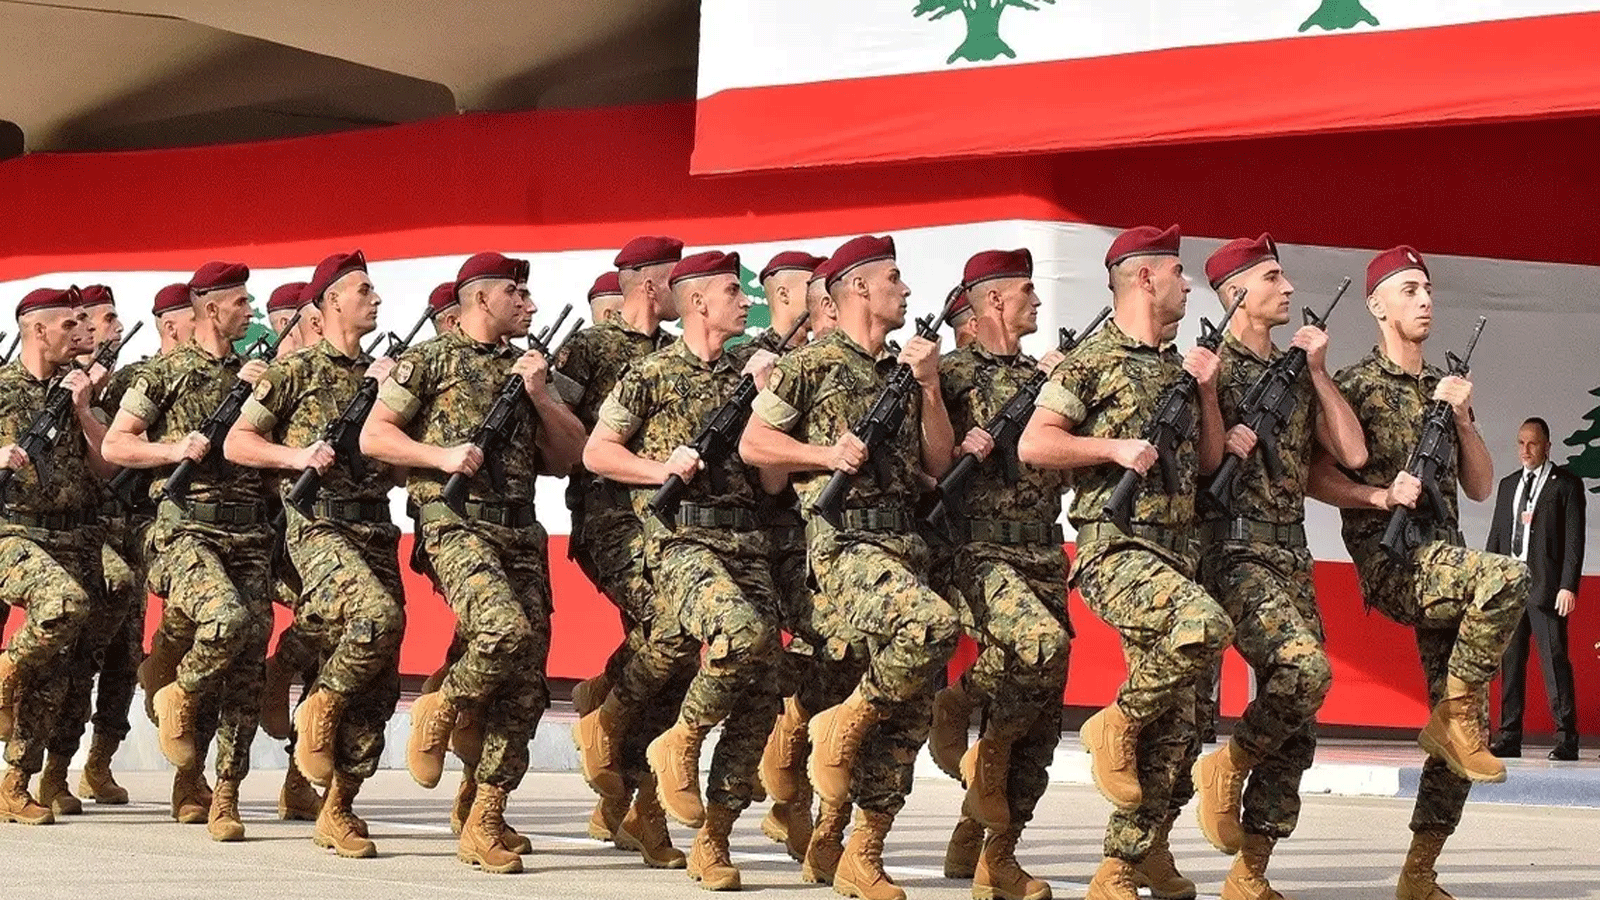 صورة أرشيفية لفرقة من الجيش اللبناني خلال عرض عسكري لإحياء ذكرى الـ76 لاستقلال لبنان في مقر وزارة الدفاع جنوب شرق بيروت في 22 تشرين الثاني\نوفمبر 2019.